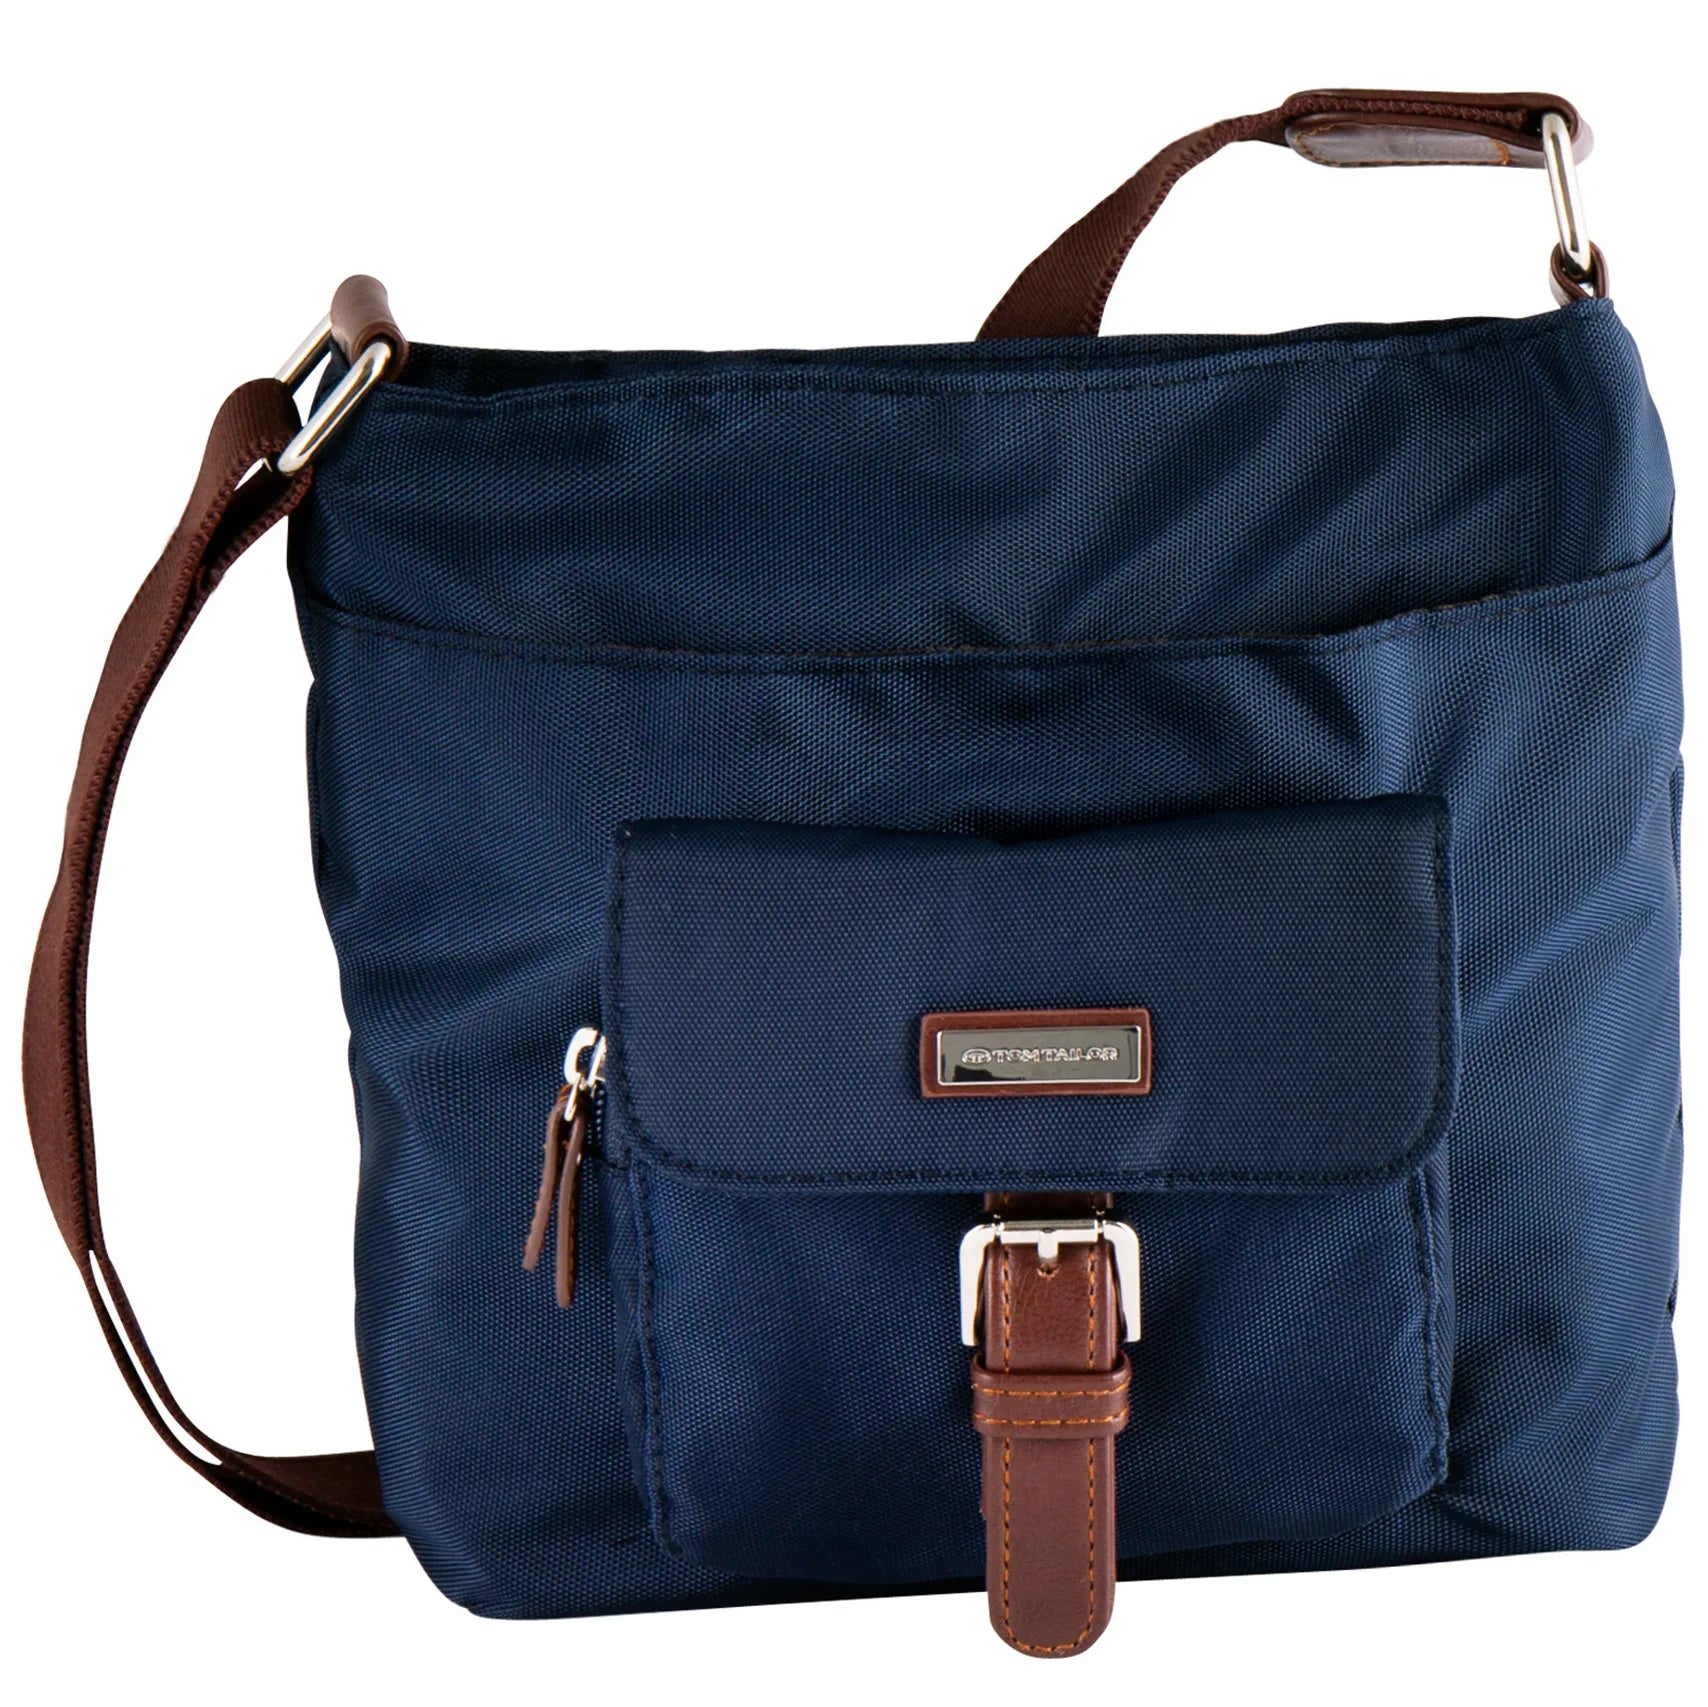 Tom Tailor Bags Rina Hobo Bag 23 cm - blue